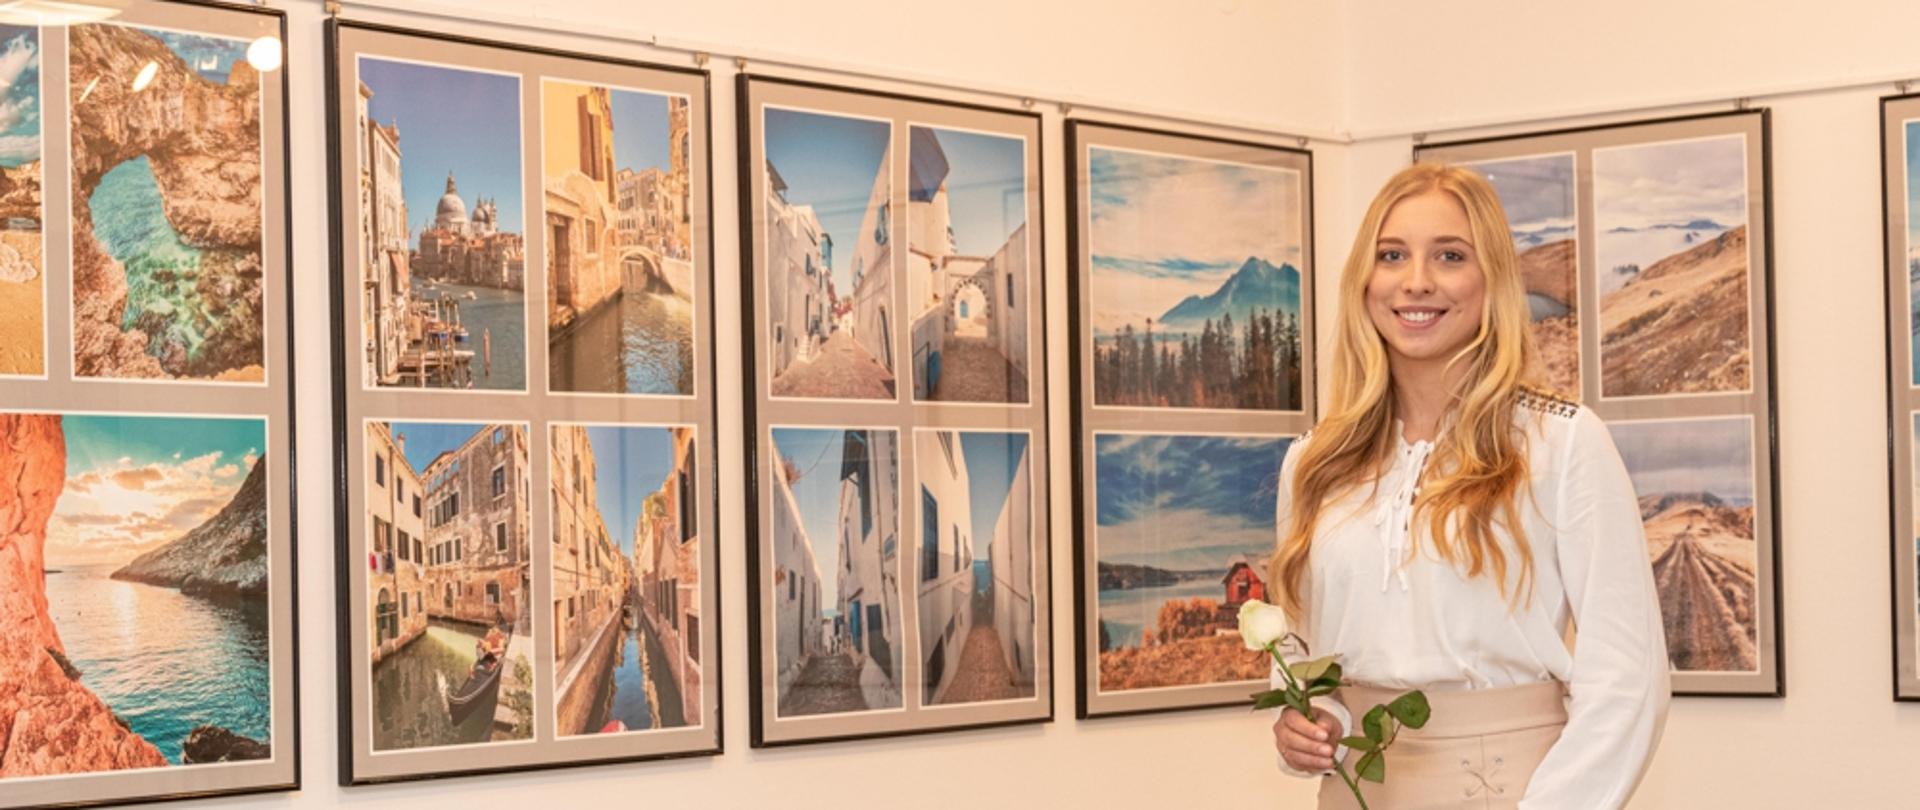 Na zdjęciu autorka wystawy fotograficznej Klaudia Glazar stojąca na tle swoich zdjęć, które przedstawiają krajobrazy. Autorka w rękach trzyma białą różę. 